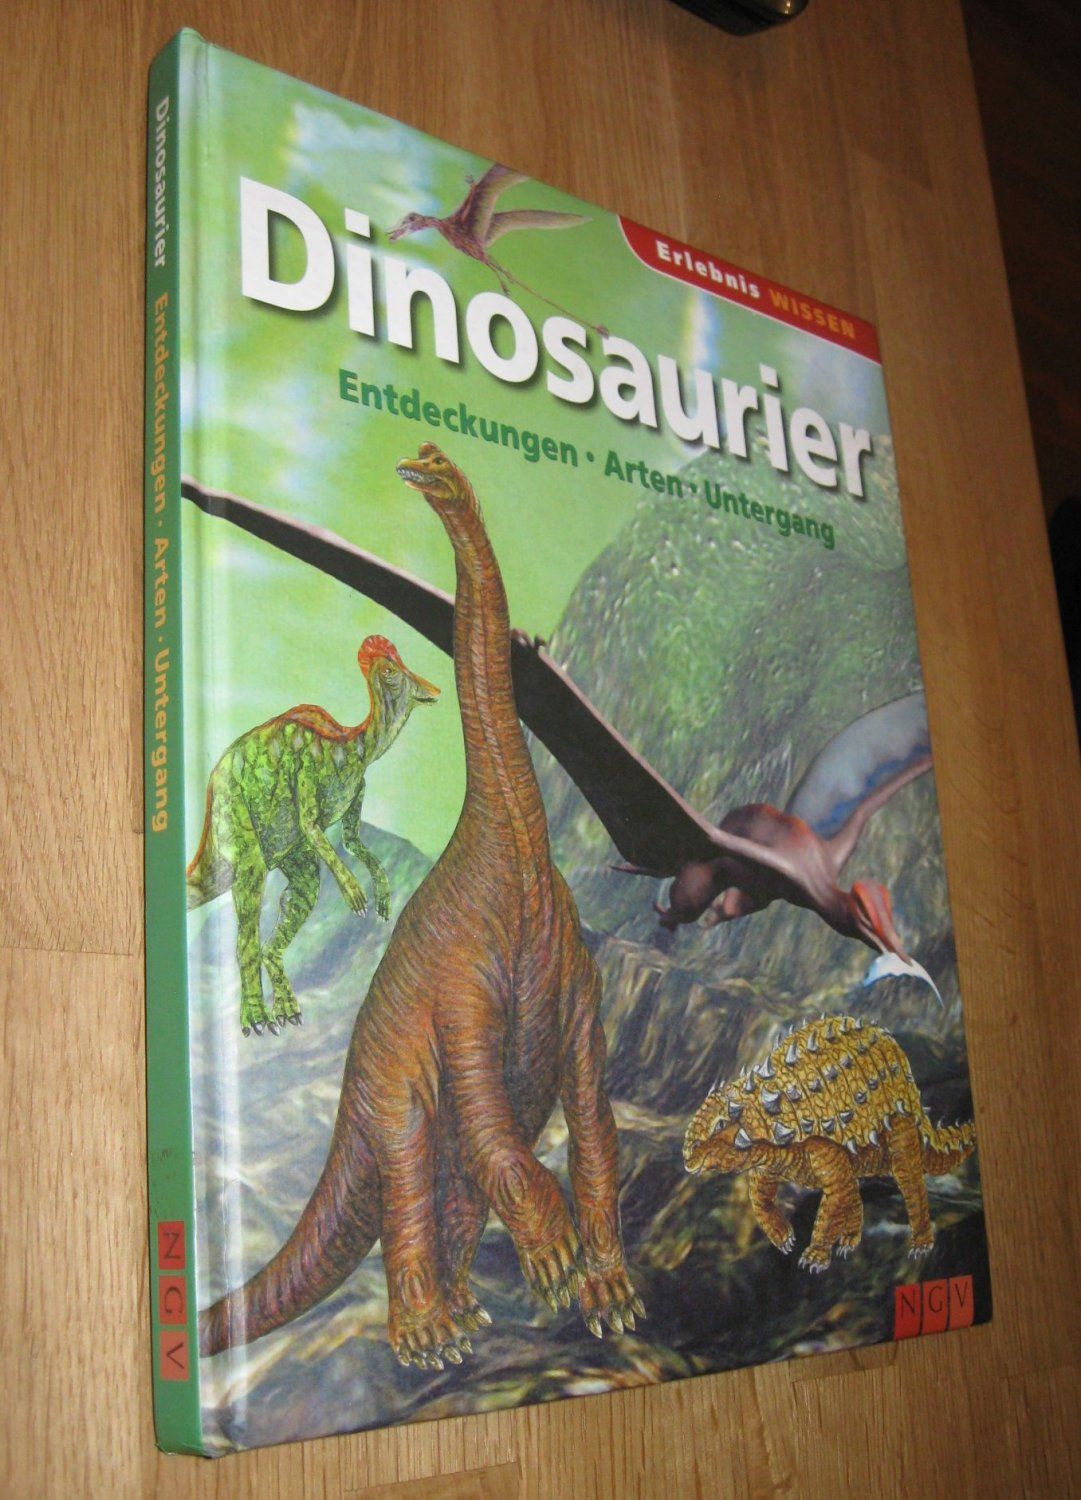 Dinosaurier ; Entdeckungen - Arten - Untergang ,  1. Auflage - Diverse